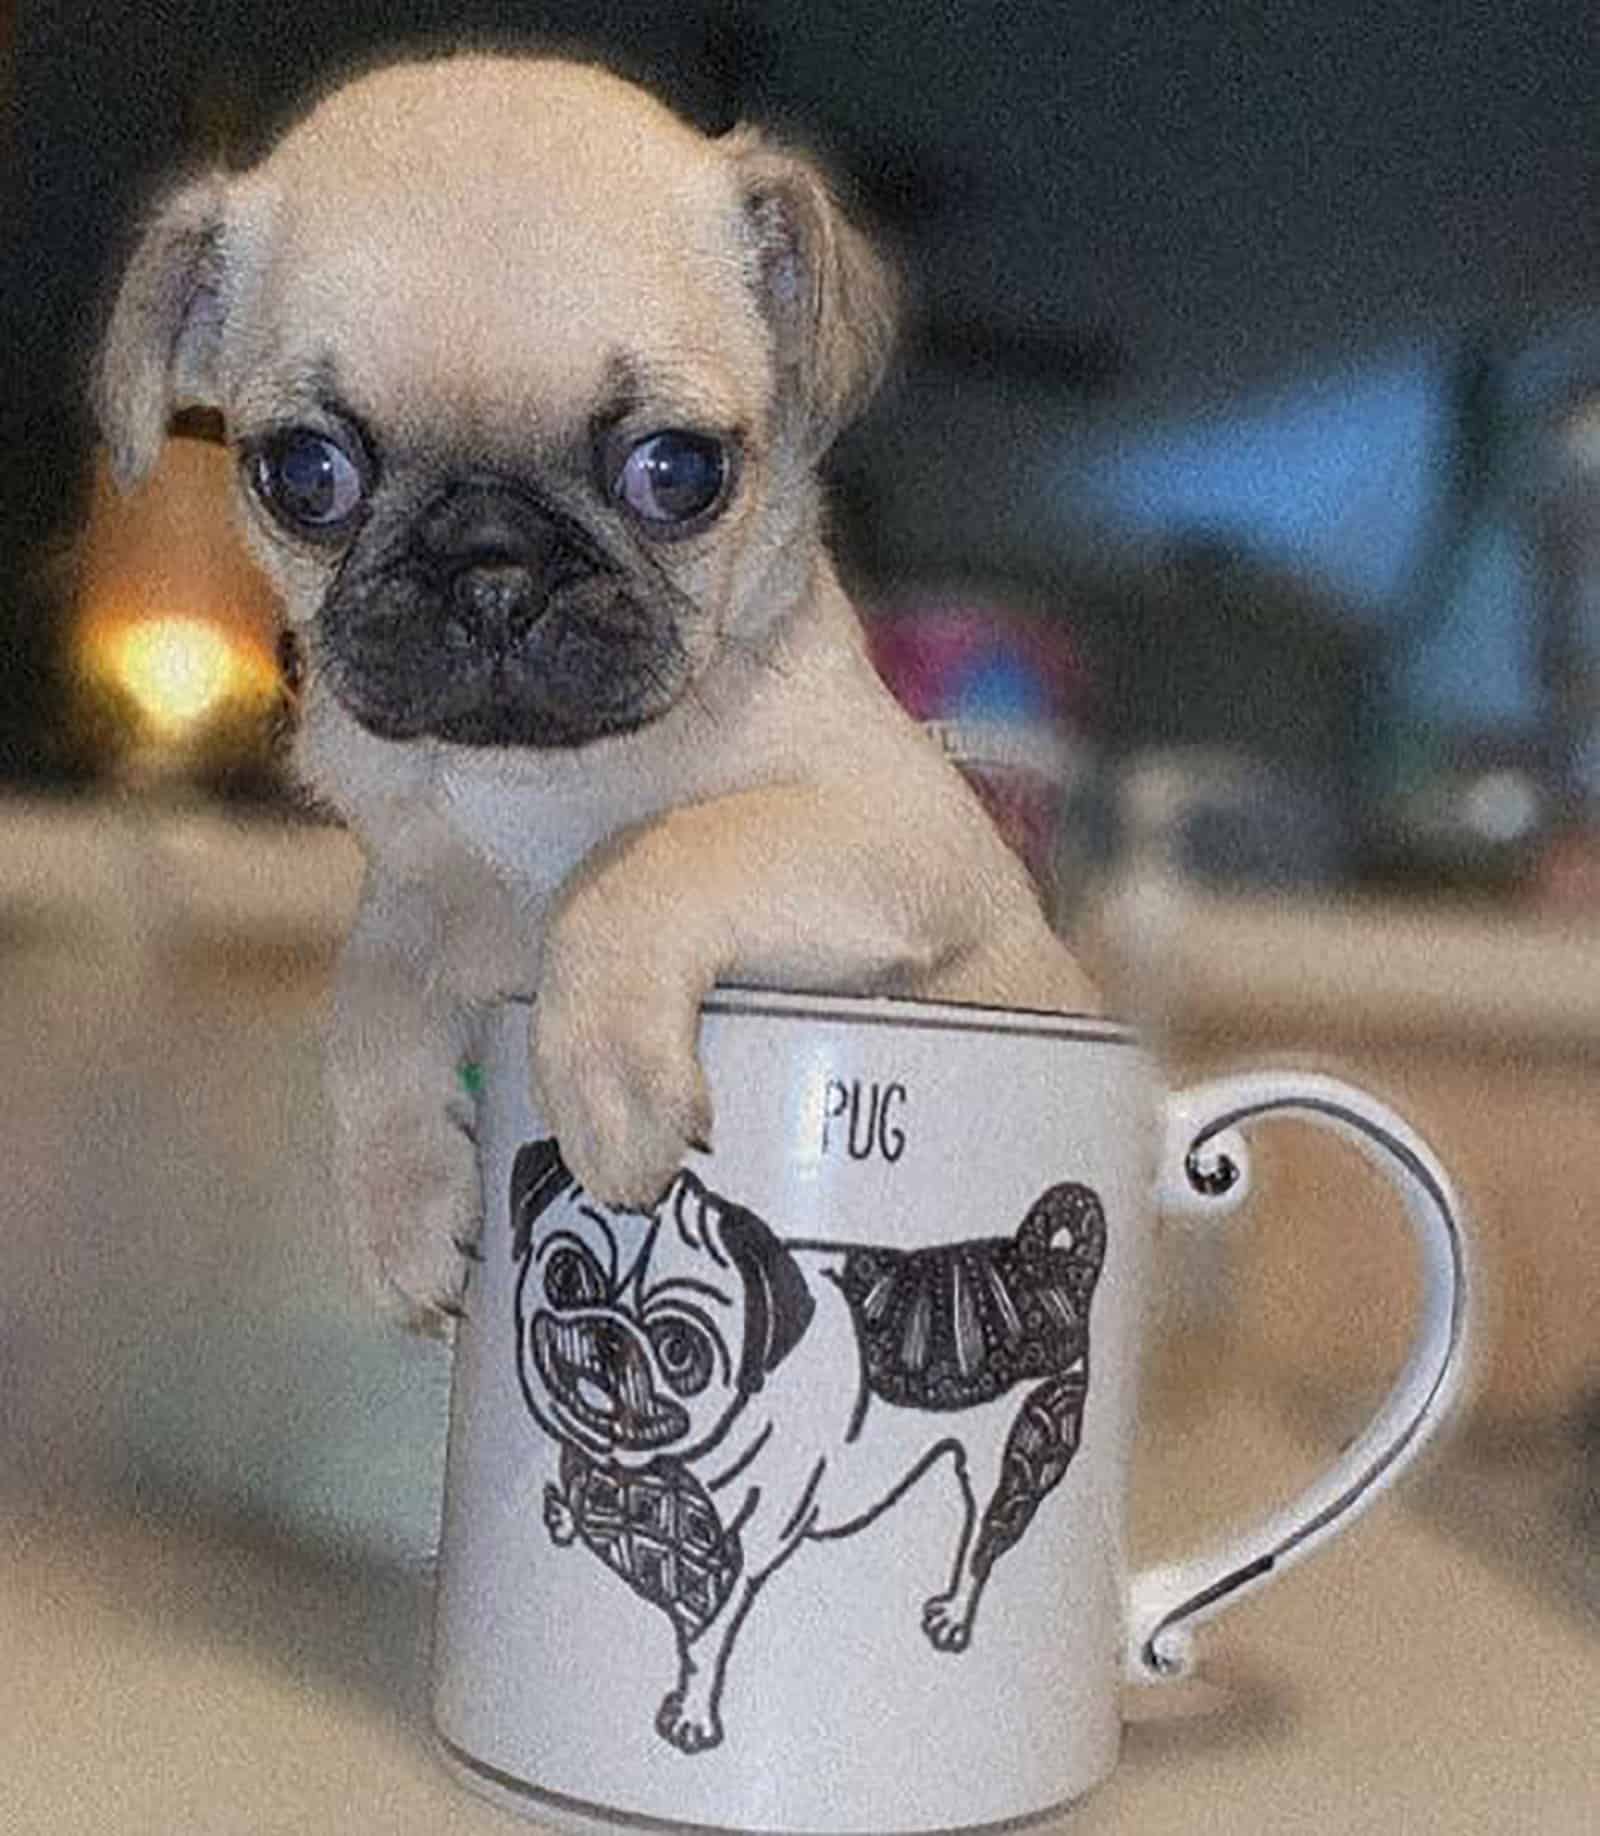 teacup pug leaning on a mug